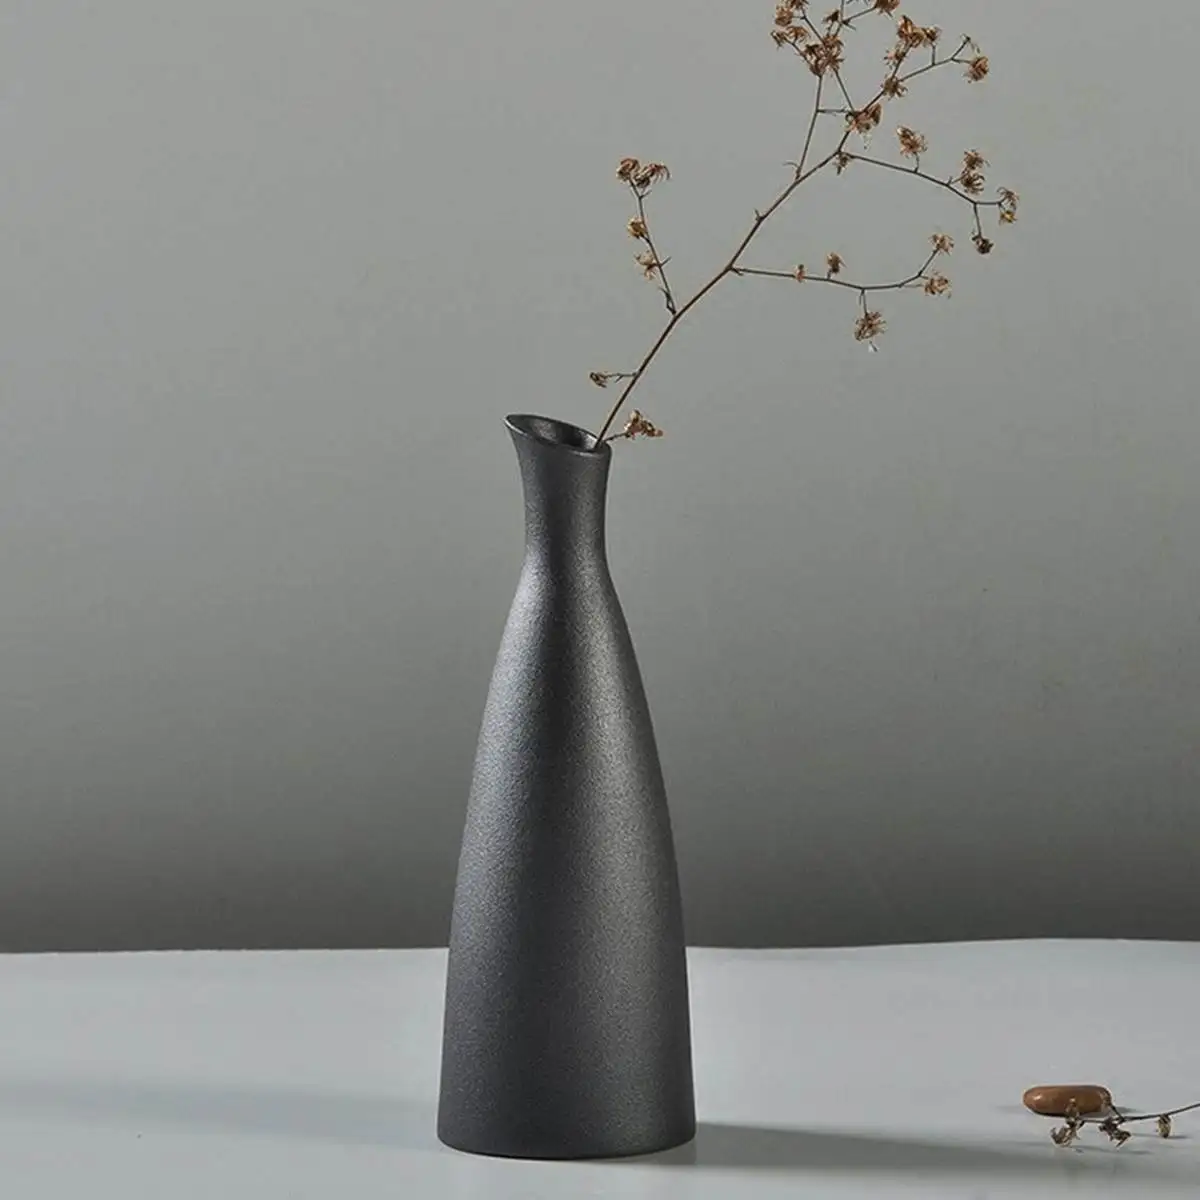 Классический черный фарфор ваза керамическая с цветами Искусство и ремесла домашний офис Декор на стол искусство ремесла стиль DIY ваза подарок